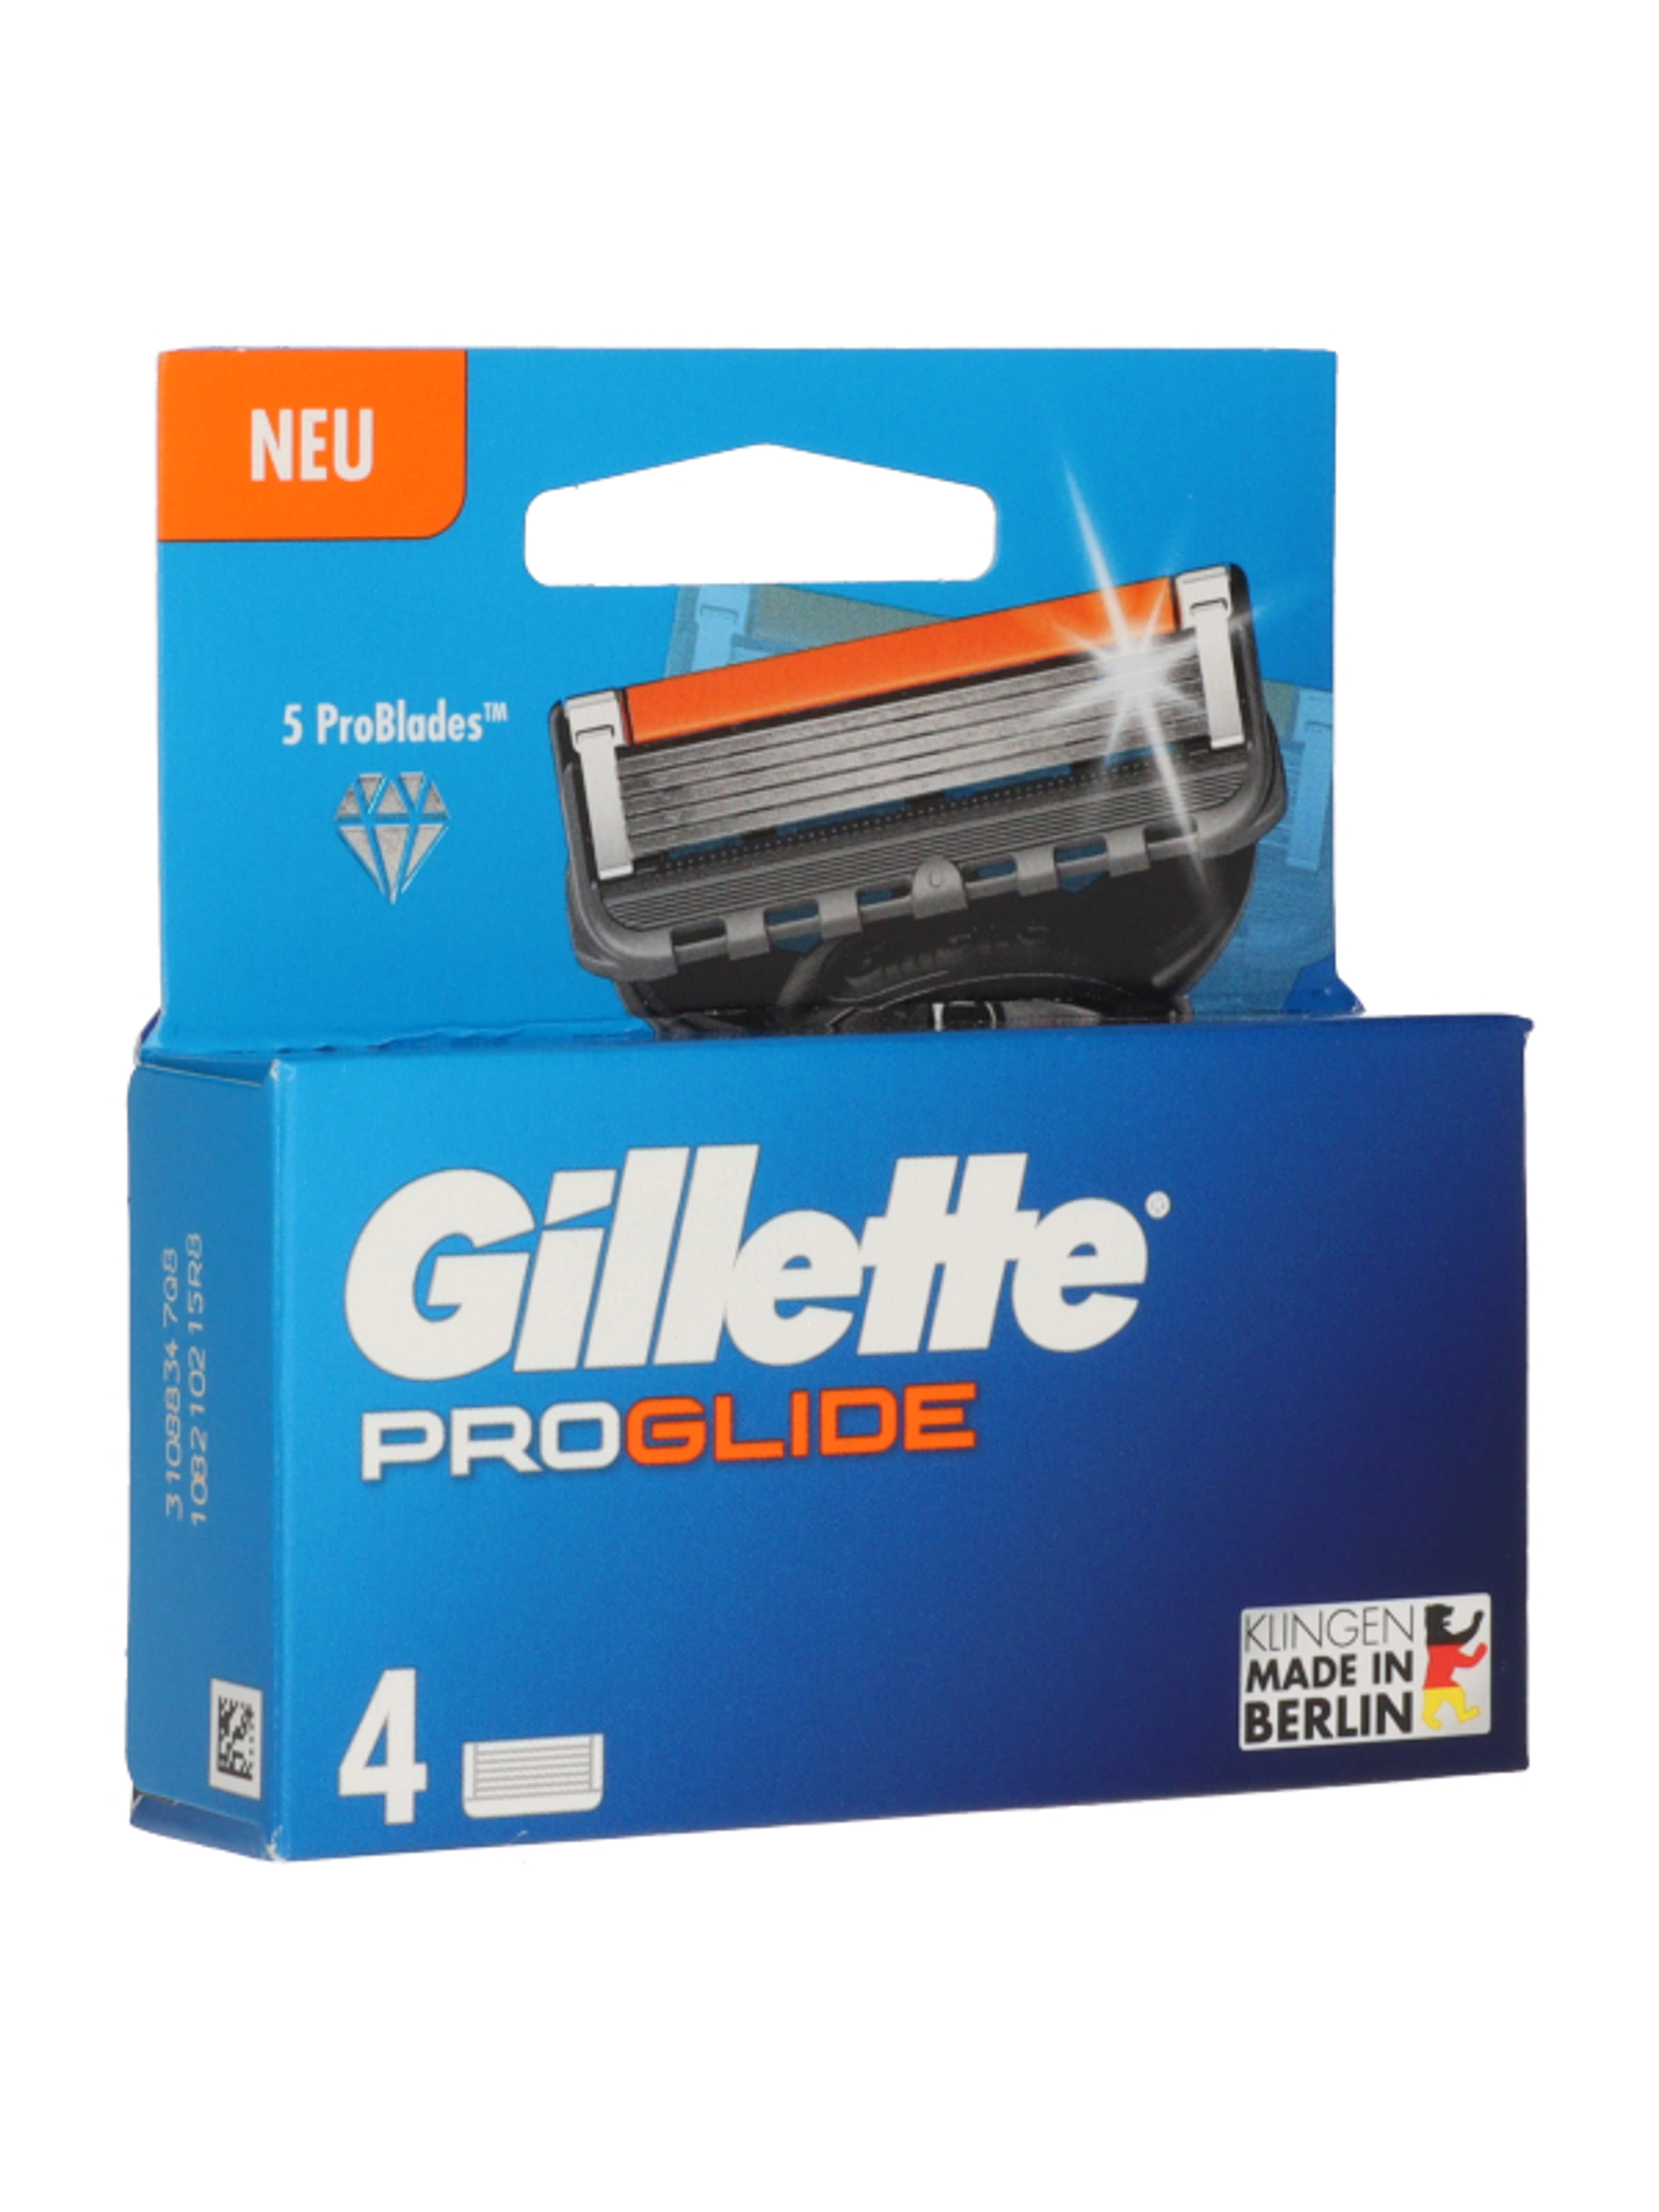 Gillette Fusion ProGlide borotvabetét 5 pengés - 4 db-4